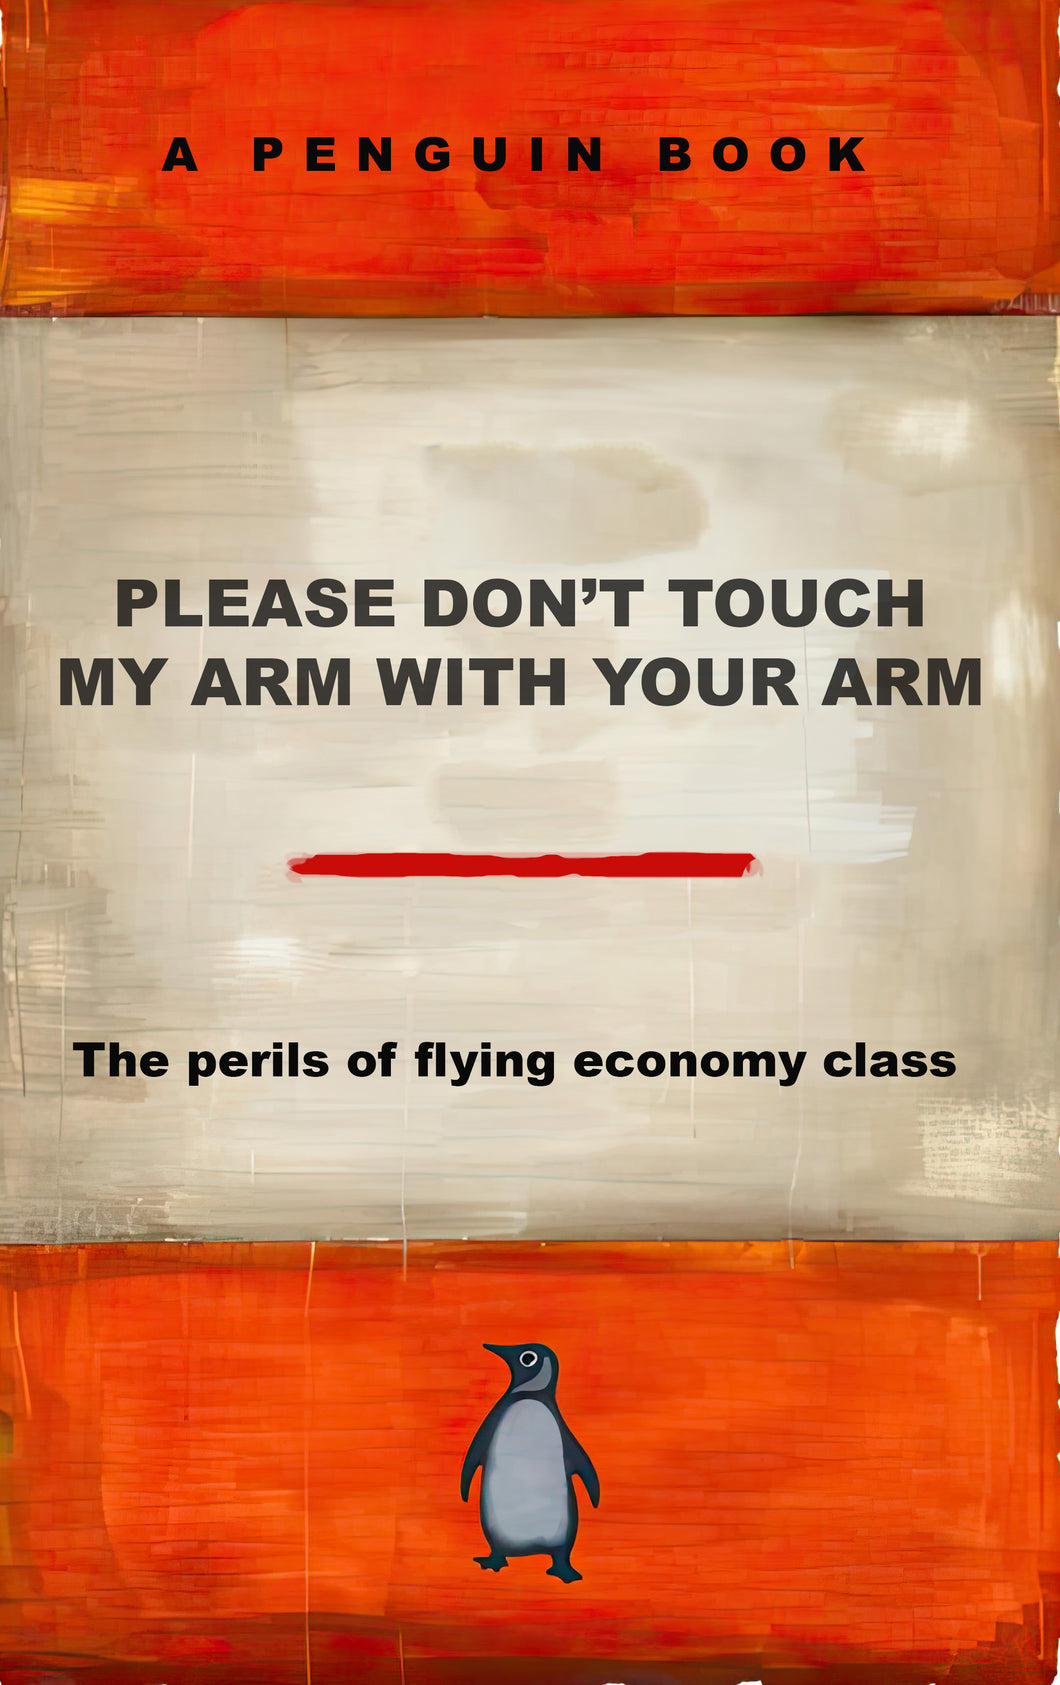 Economy Class